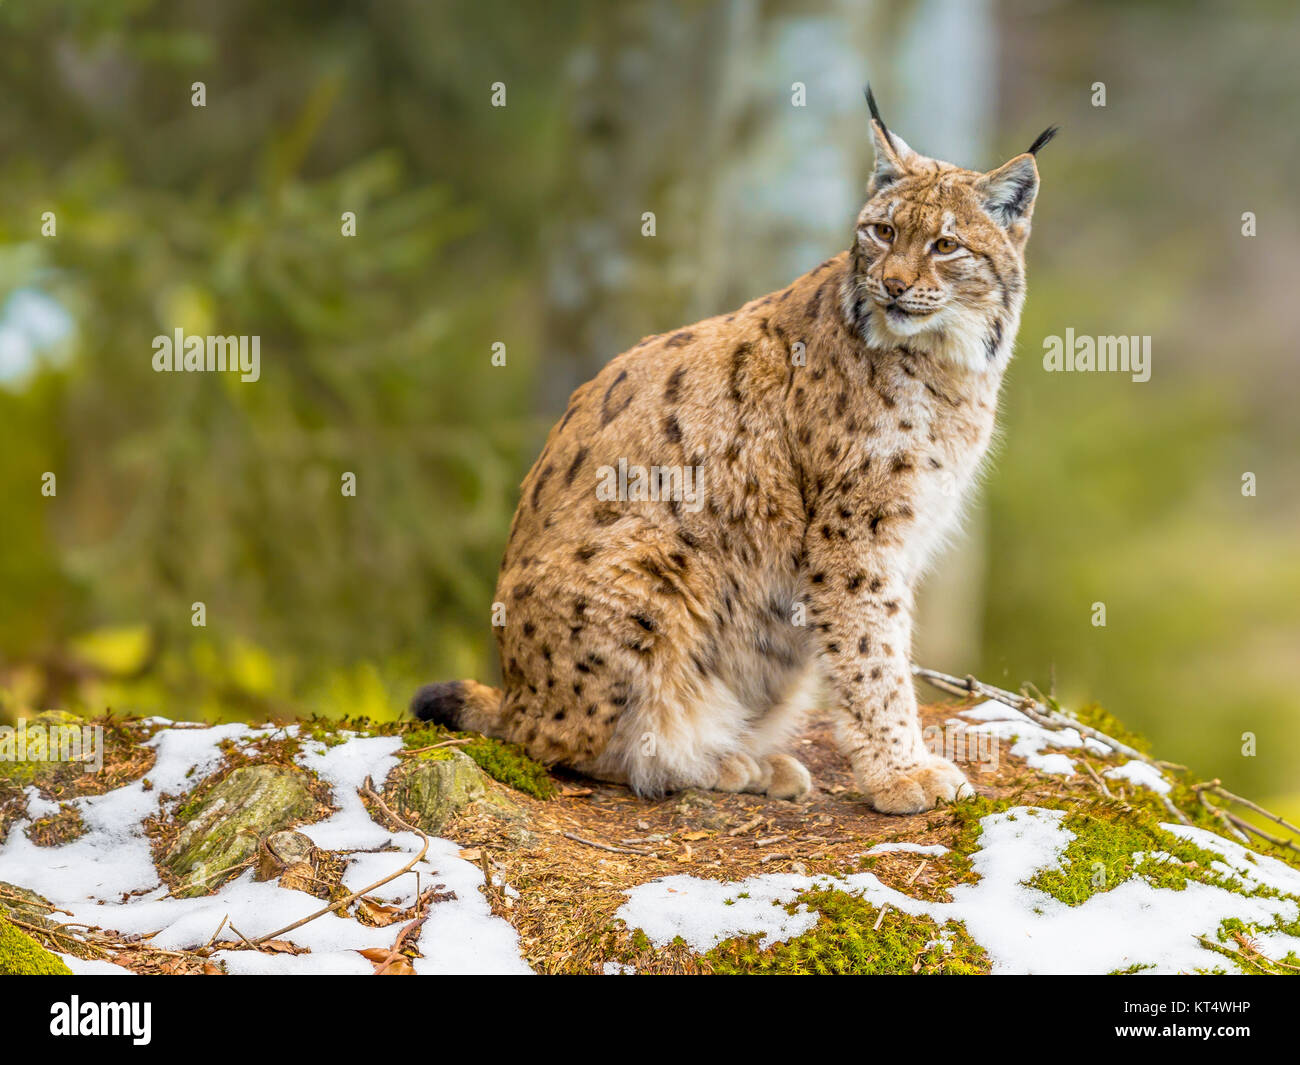 La euroasiática de tamaño mediano (Lynx lynx) es nativo de Siberia, Central, Oriental y Meridional, Asia, América del Norte, Europa Central y Oriental. Descansando en winte Foto de stock